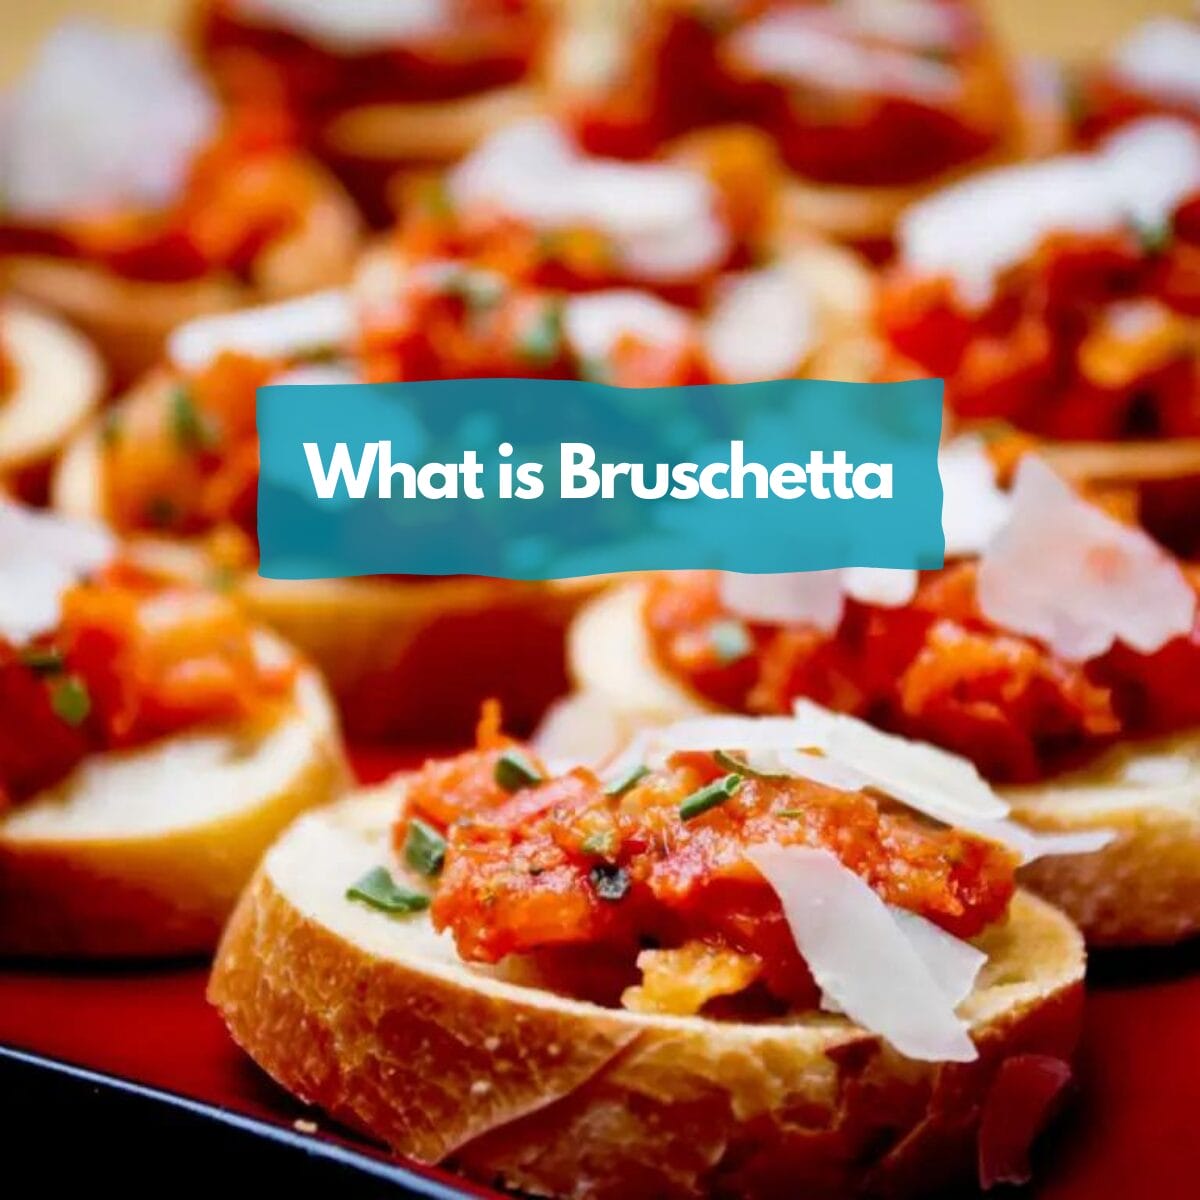 What is Bruschetta